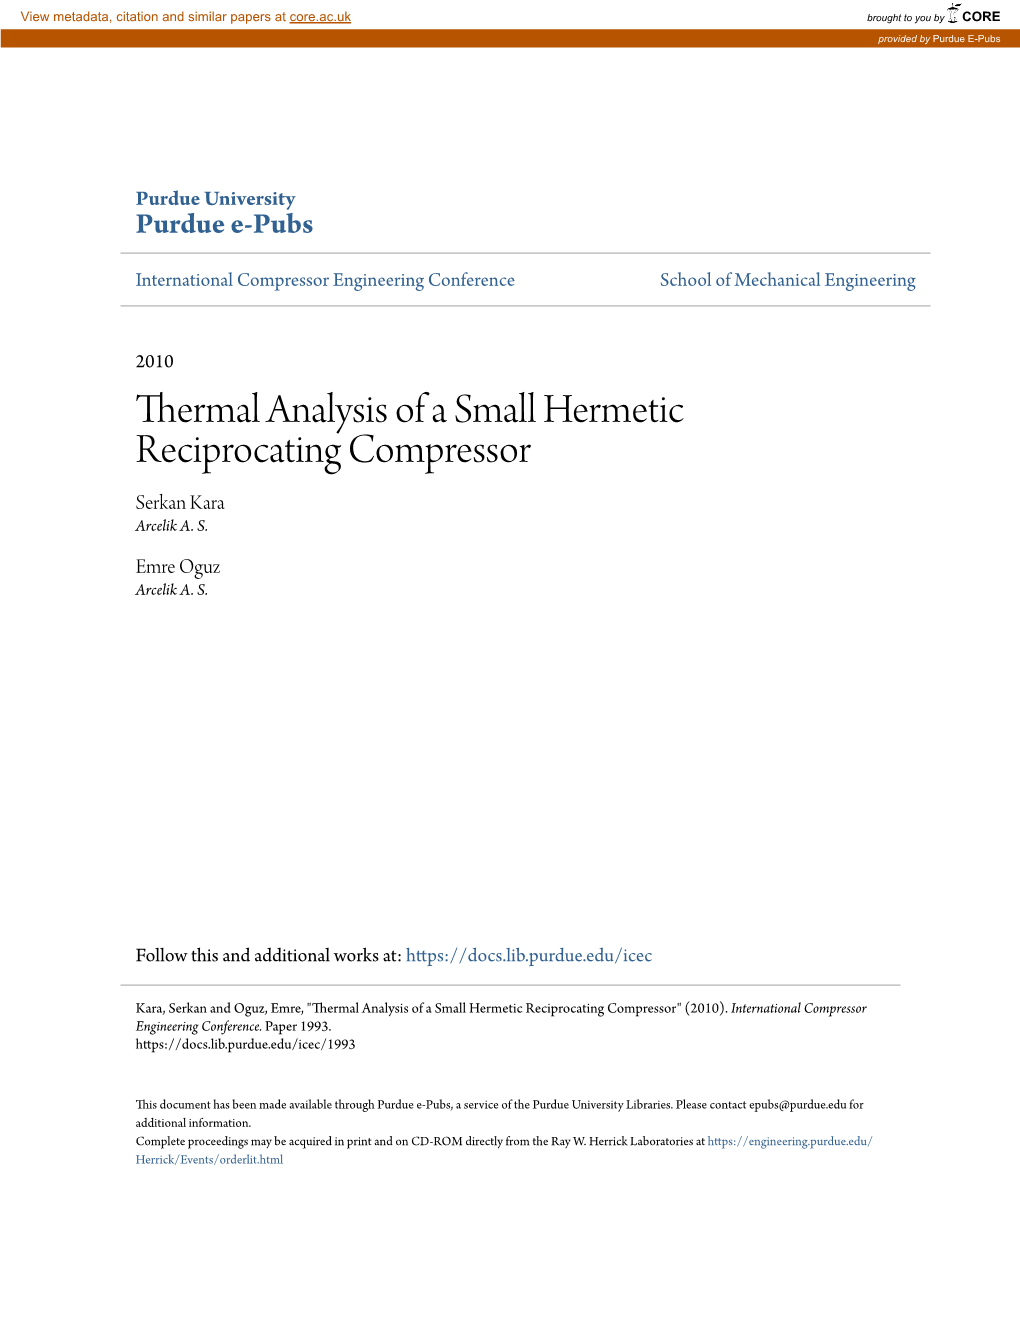 Thermal Analysis of a Small Hermetic Reciprocating Compressor Serkan Kara Arcelik A